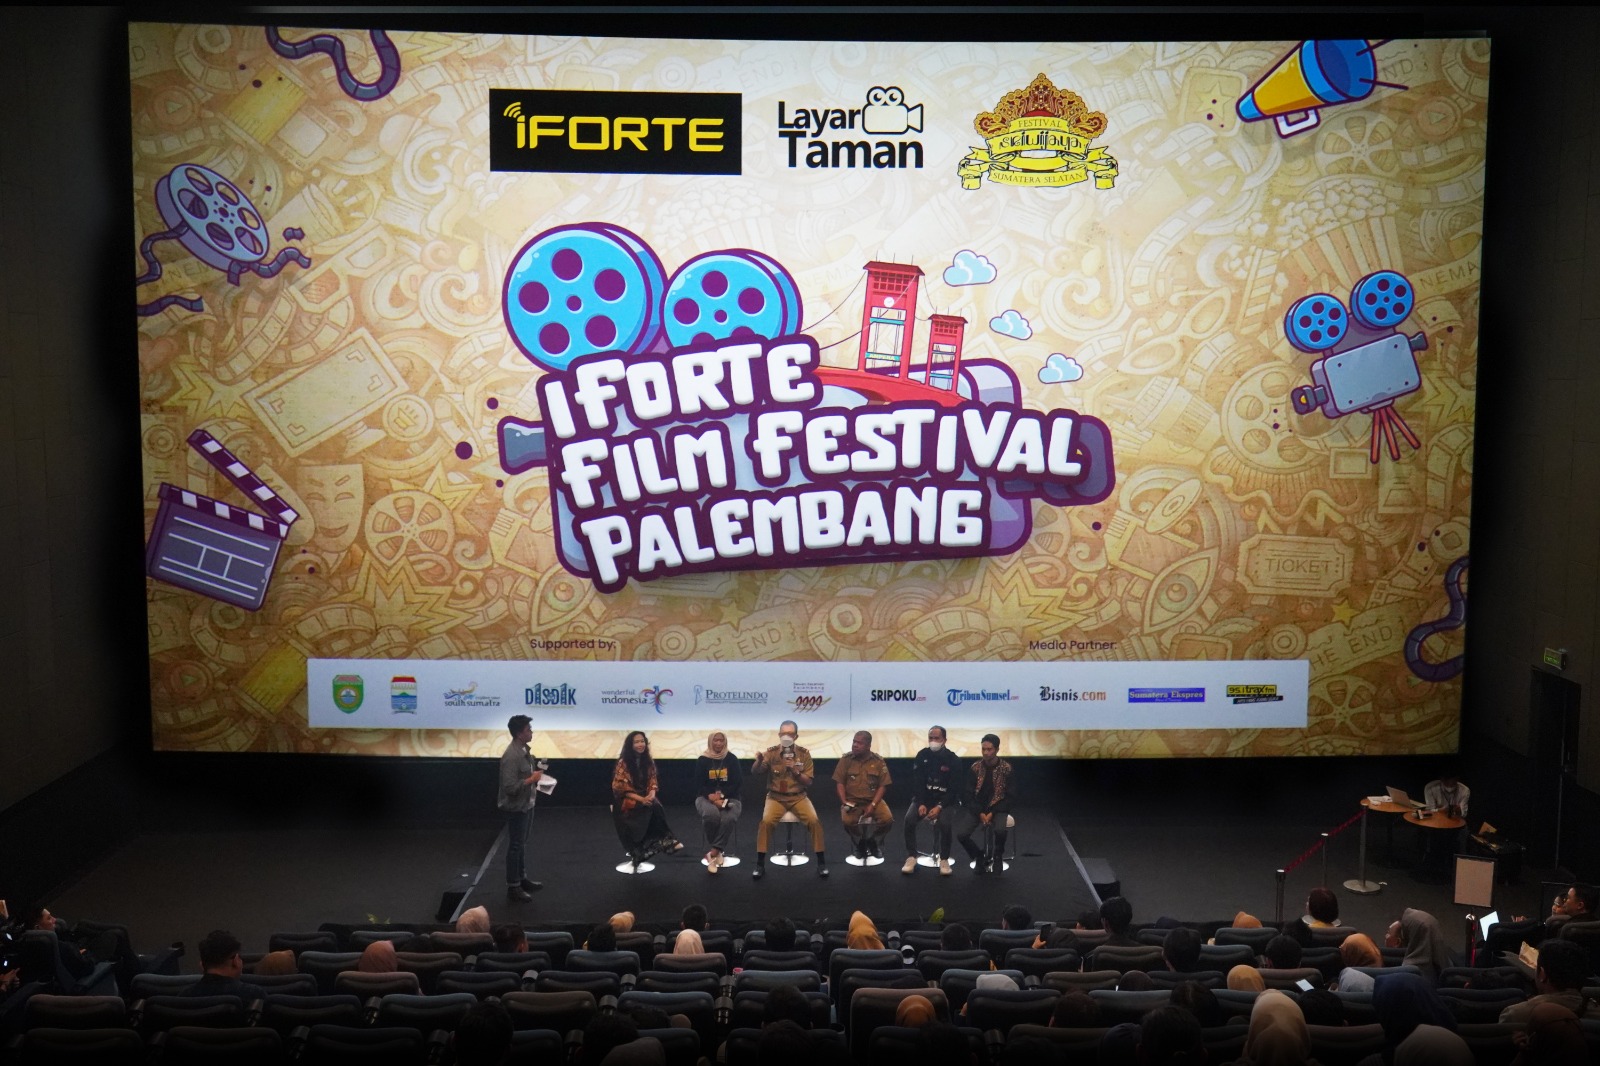 Yuk, Ikutan Ajang iForte Film Festival Palembang, Hadiahnya Ratusan Juta..